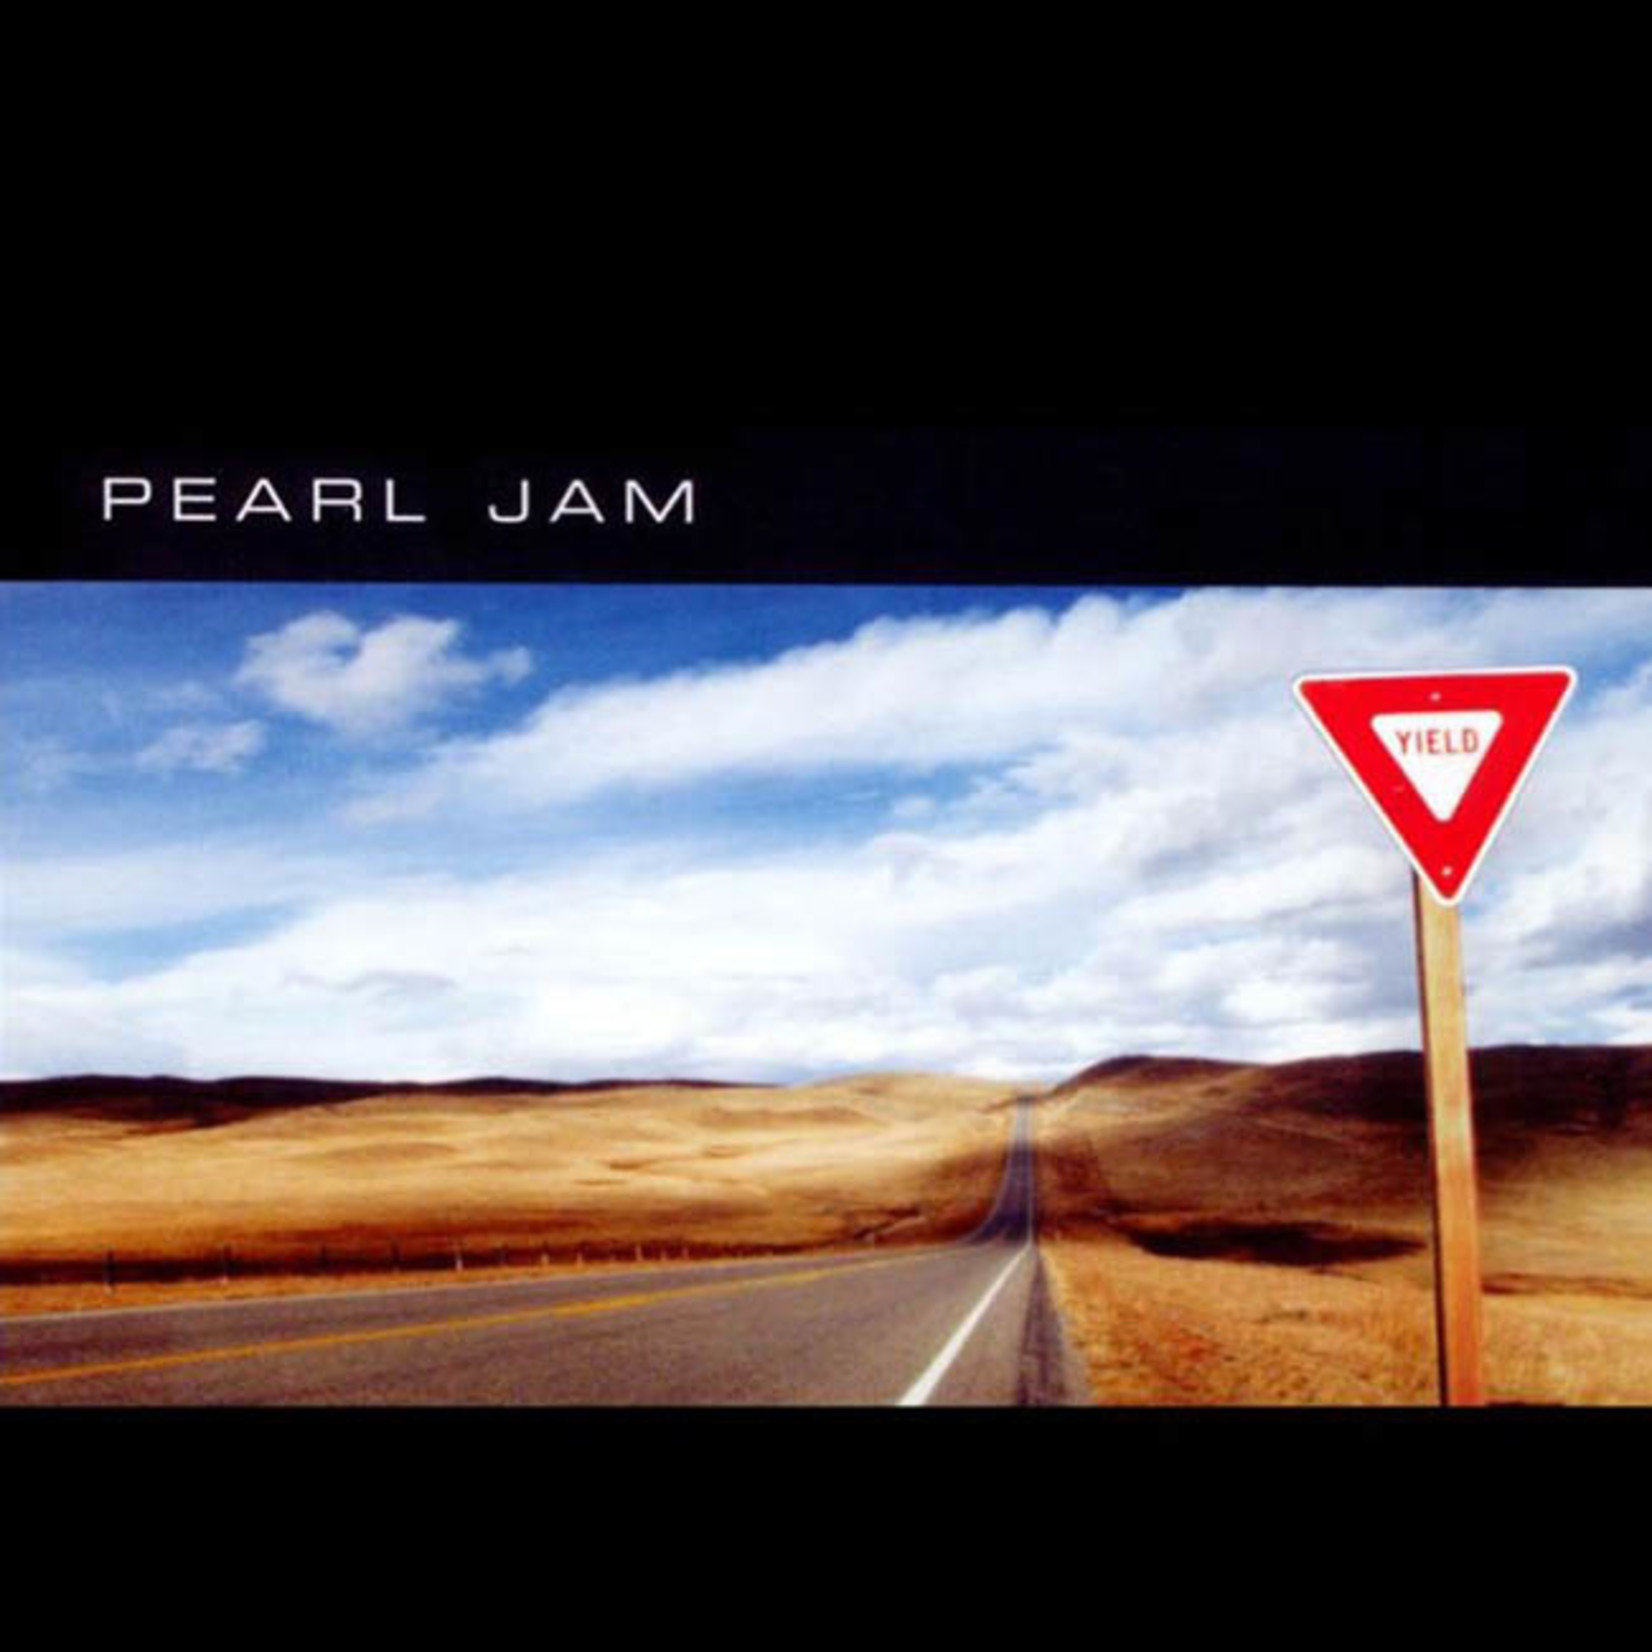 [New] Pearl Jam - Yield